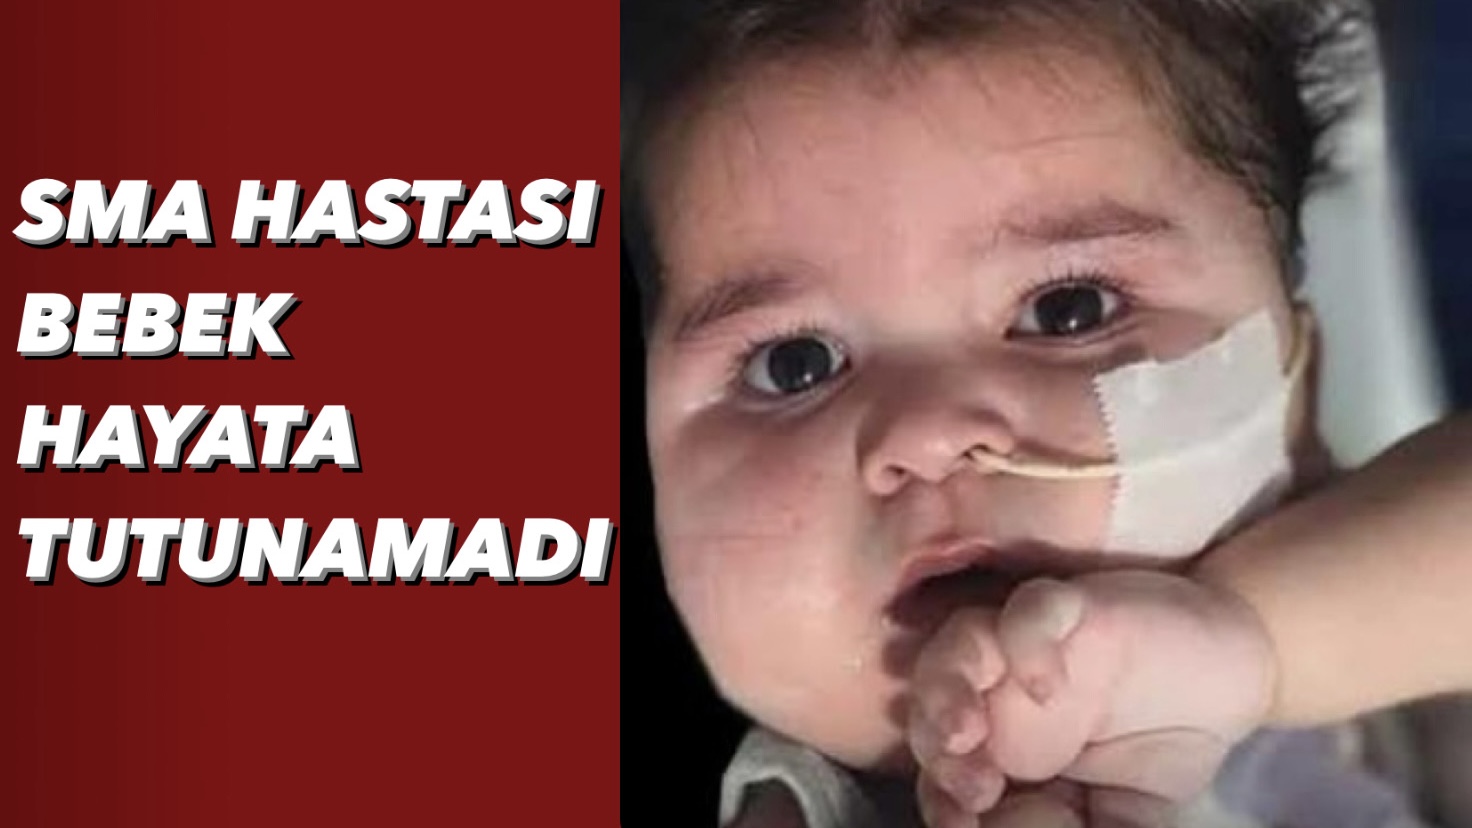 SMA Hastası Bebek Hayata Tutunamadı